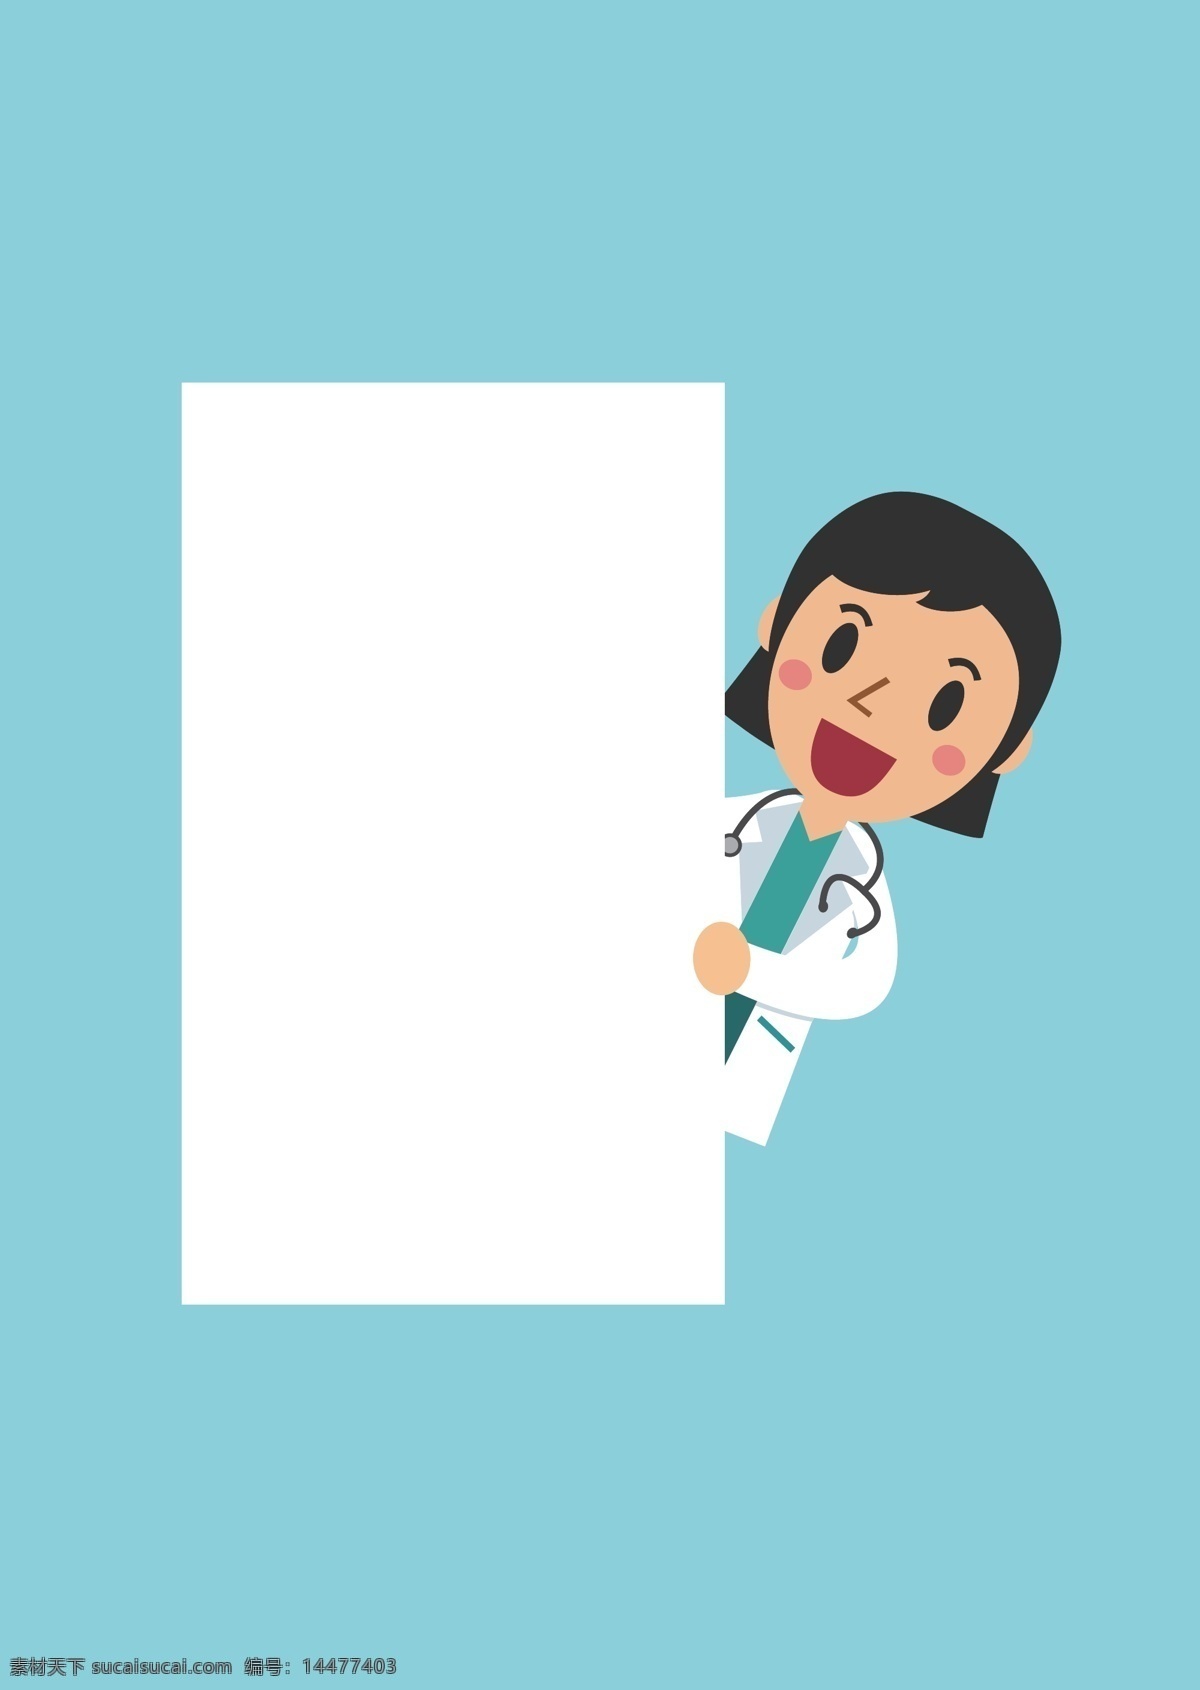 卡通医生 卡通 可爱 医院护士 医生 举牌 宣传图 指示牌 kt 板 设计印刷 ui 矢量图素材